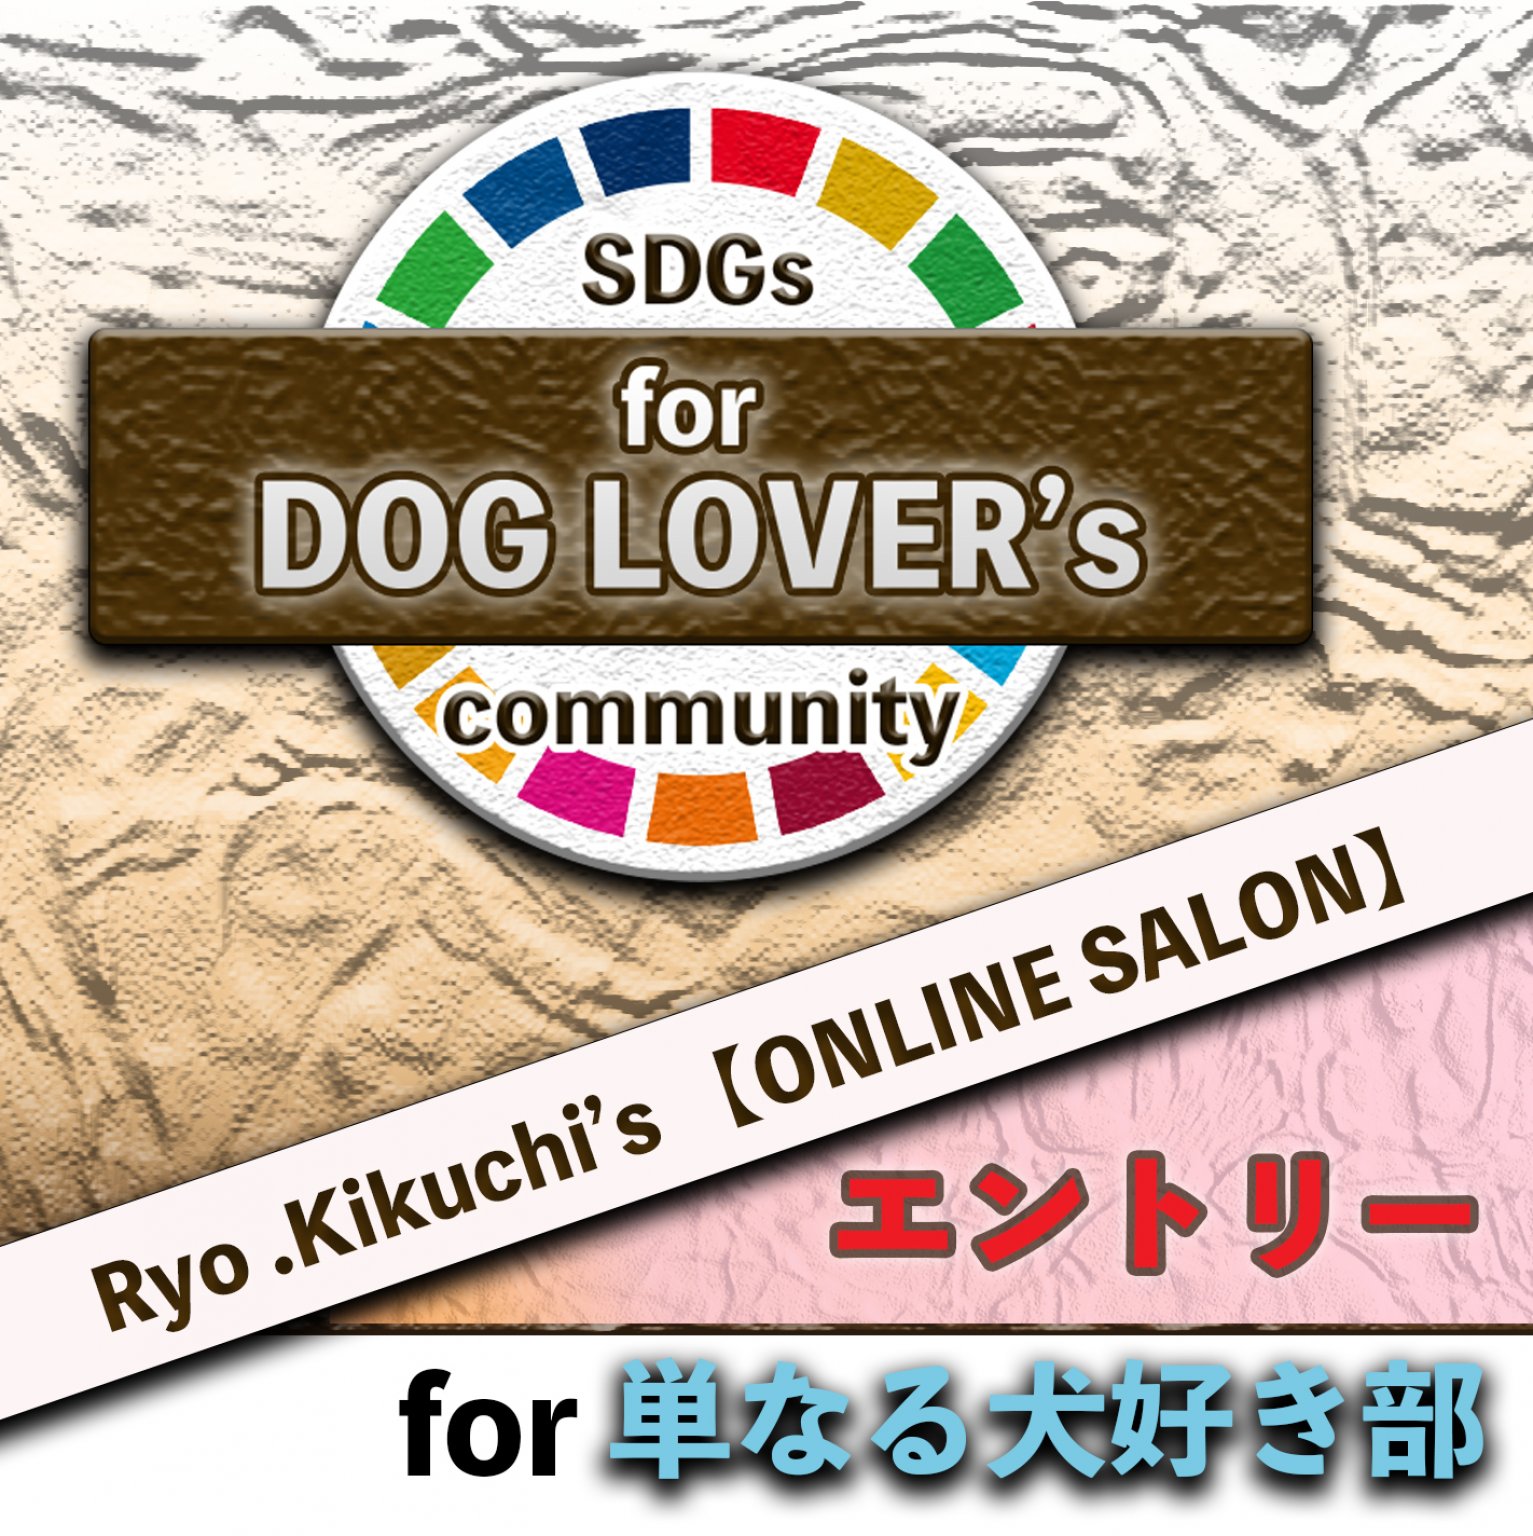 【エントリー】for 単なる犬好き部 《菊池 亮のオンライン サロン SDGs的 DOG LOVER's community》